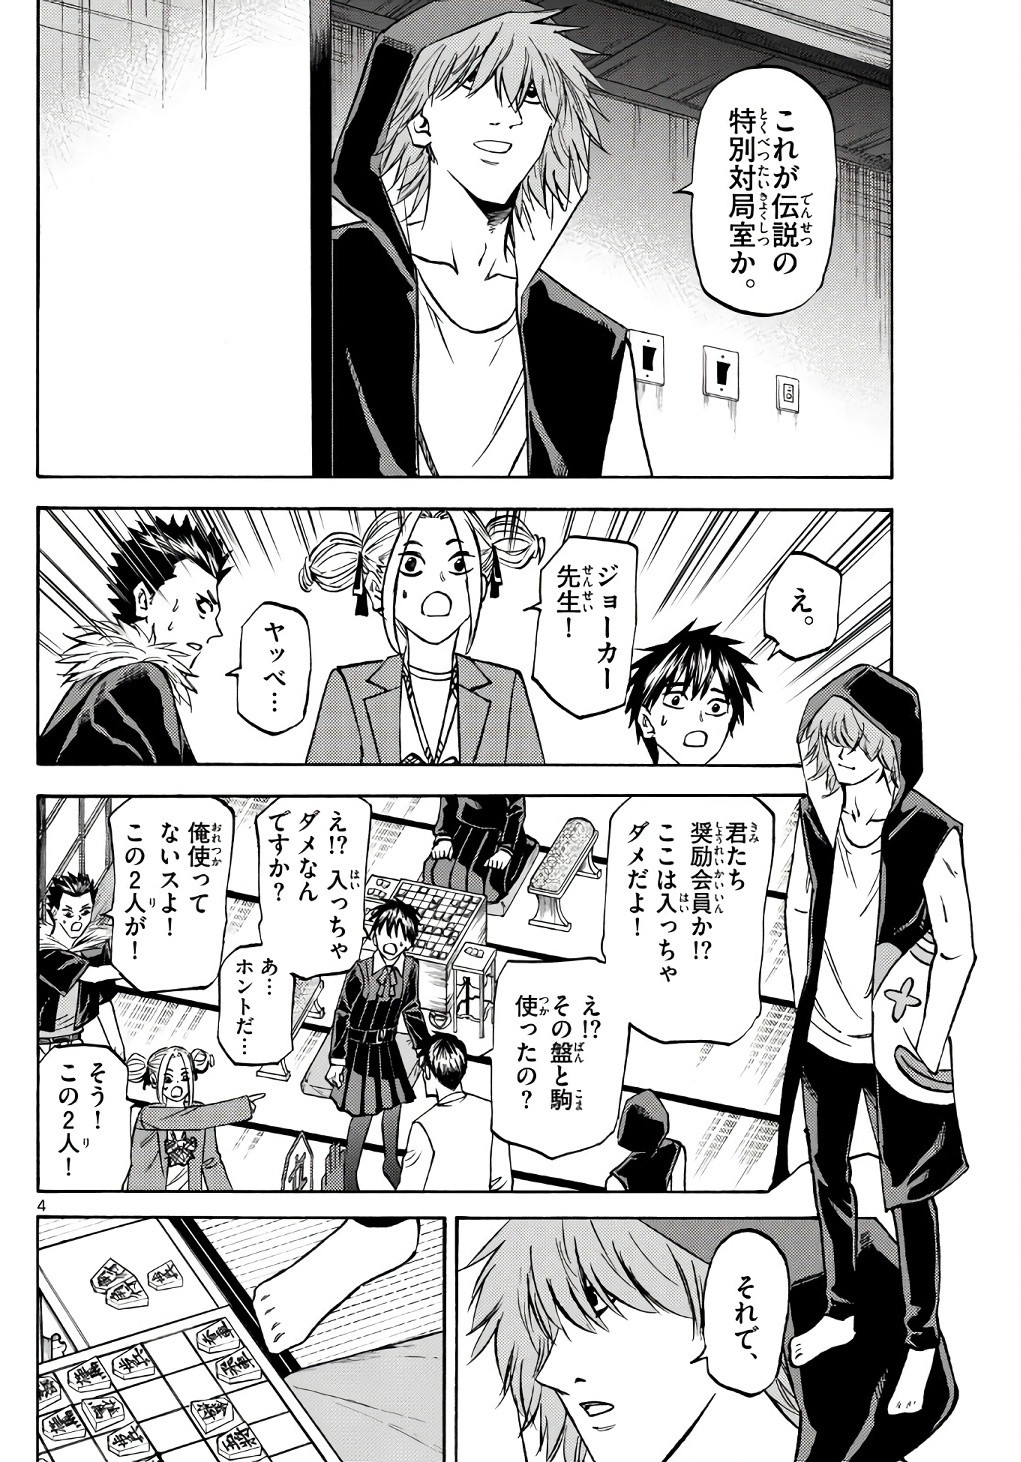 Ryu-to-Ichigo - Chapter 184 - Page 4